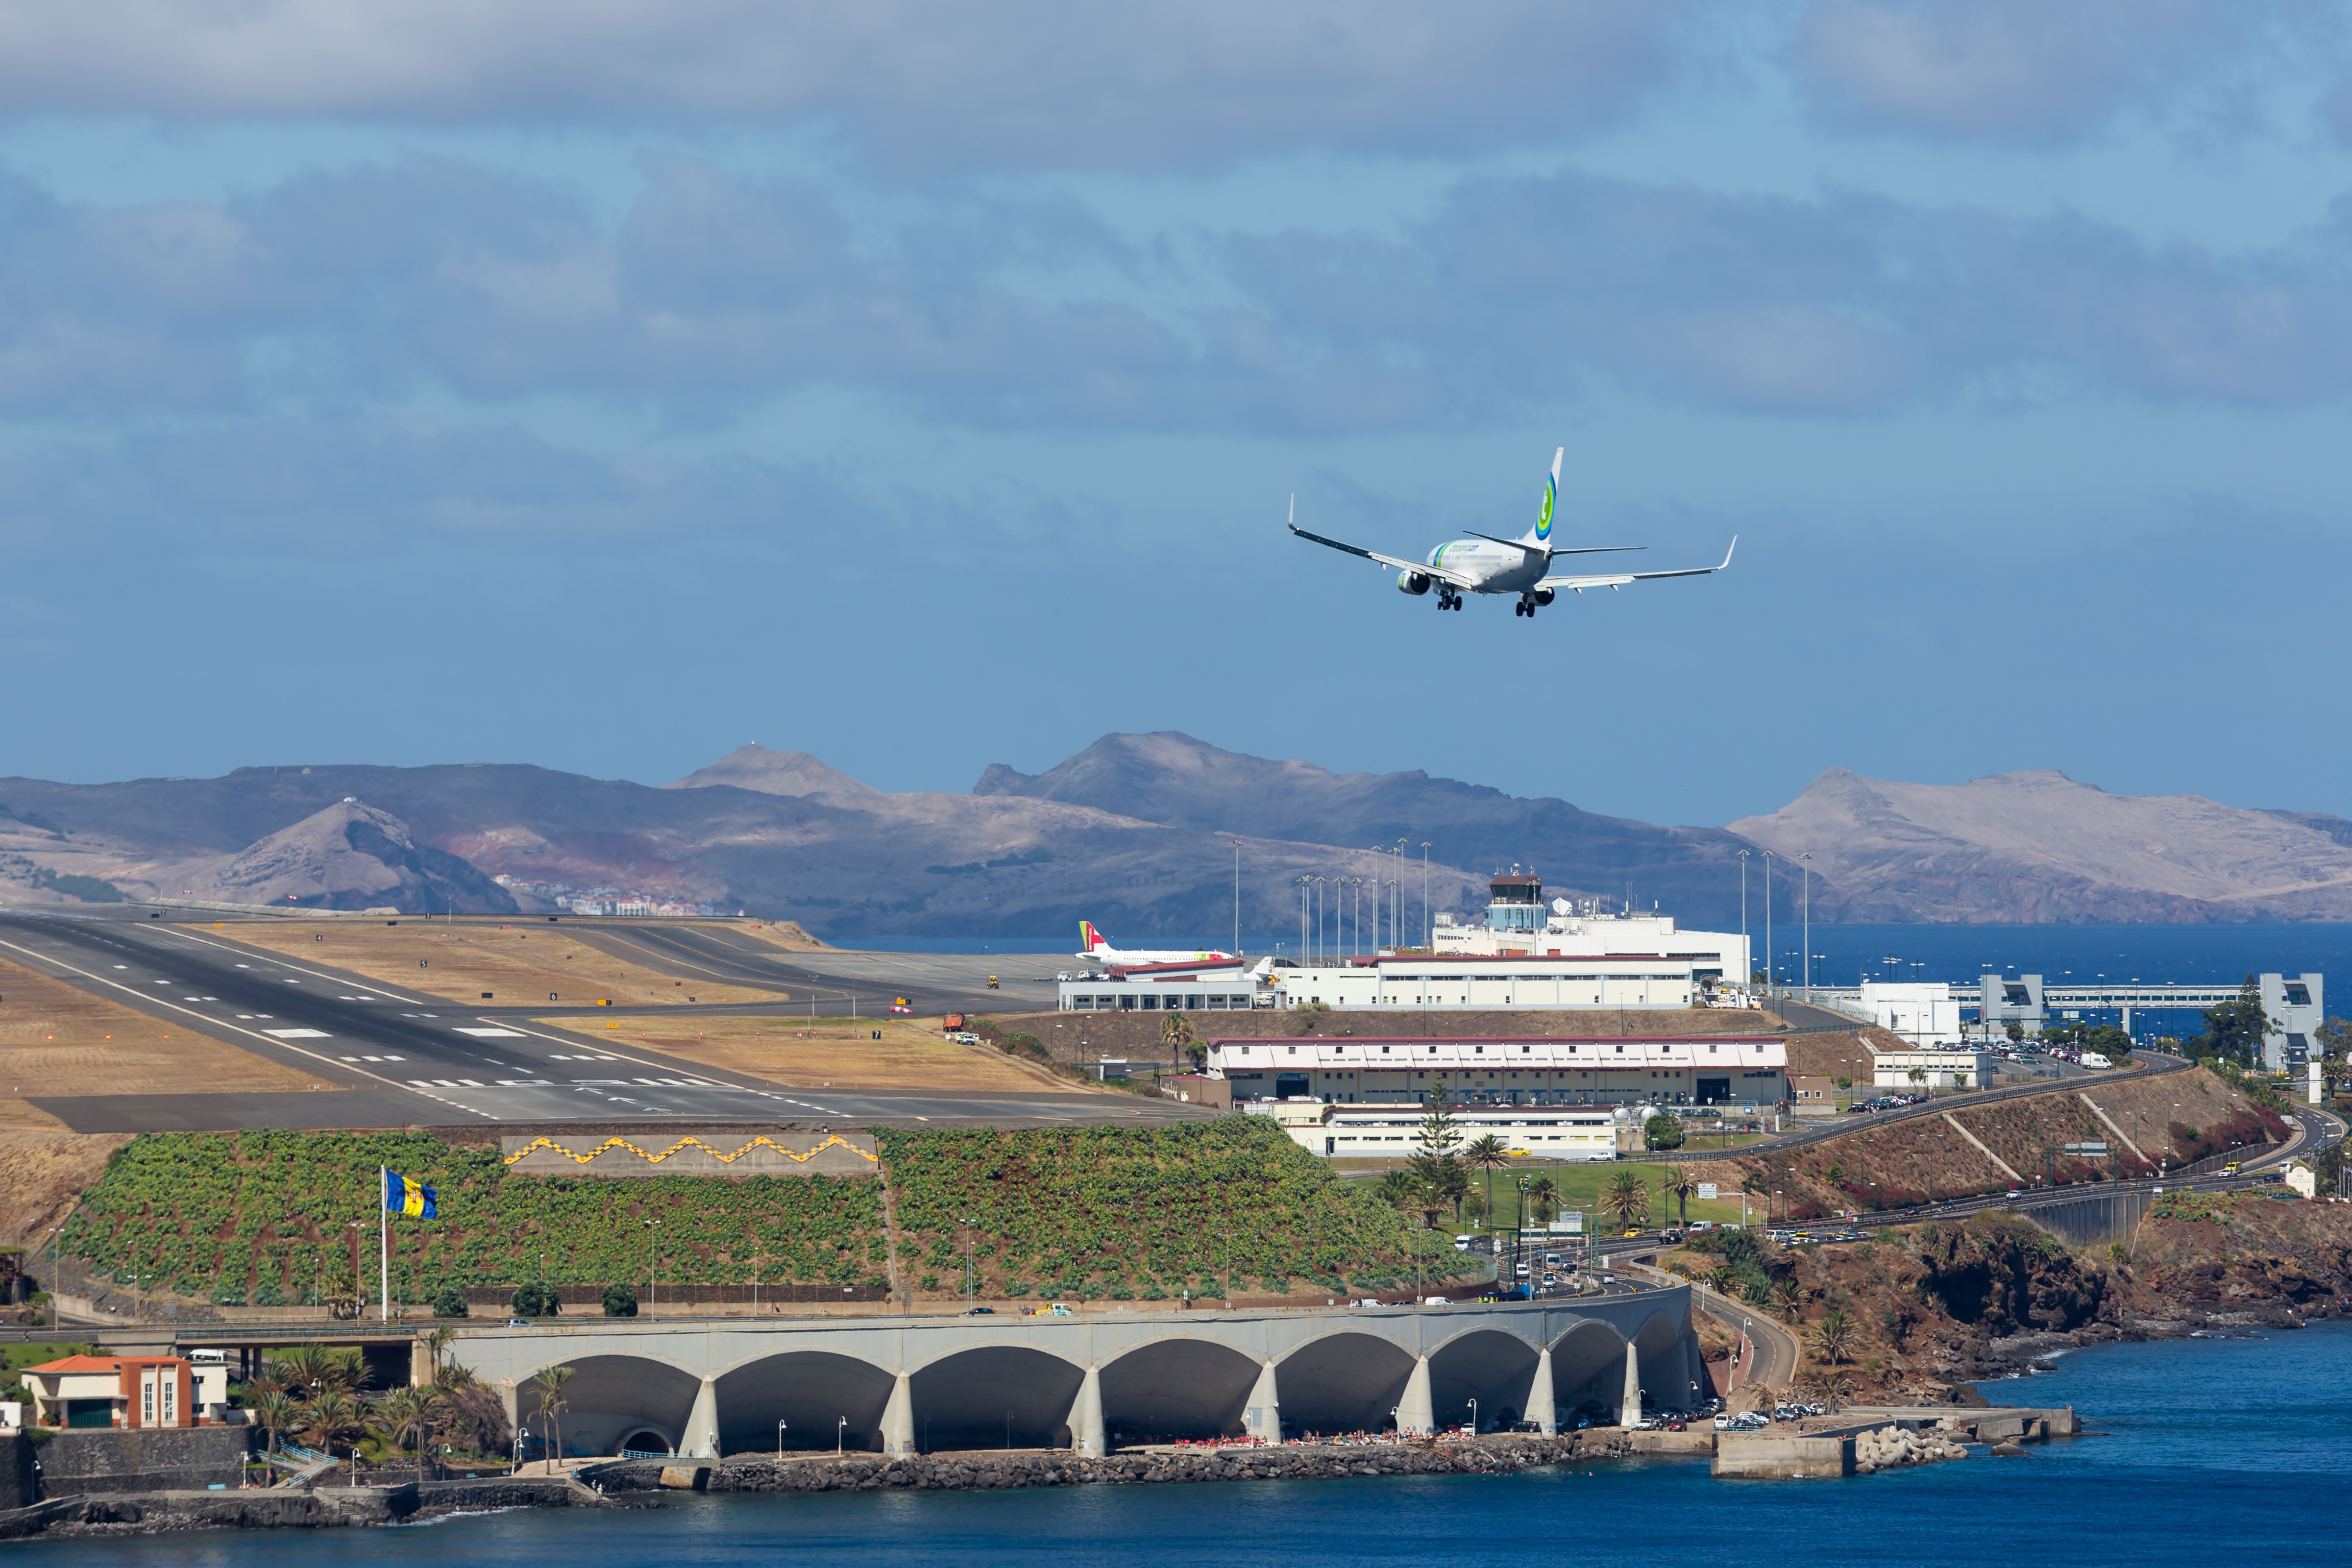 Madeira Airport Transavia Boeing 737 Approach